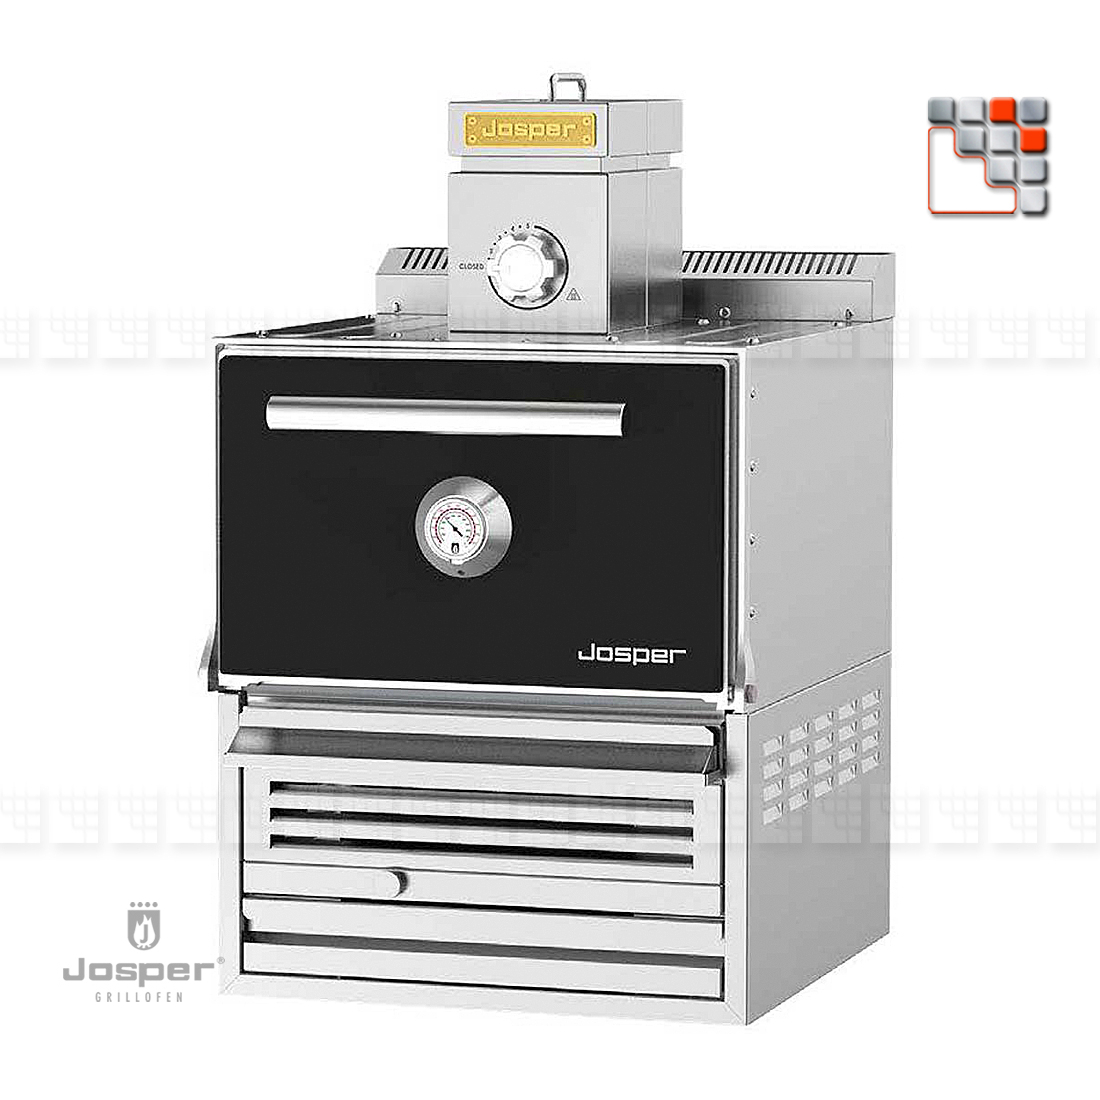 Charcoal Oven HJX-80 JOSPER J48-HJX JOSPER Grill Charcoal Ovens & Rotisseries JOSPER